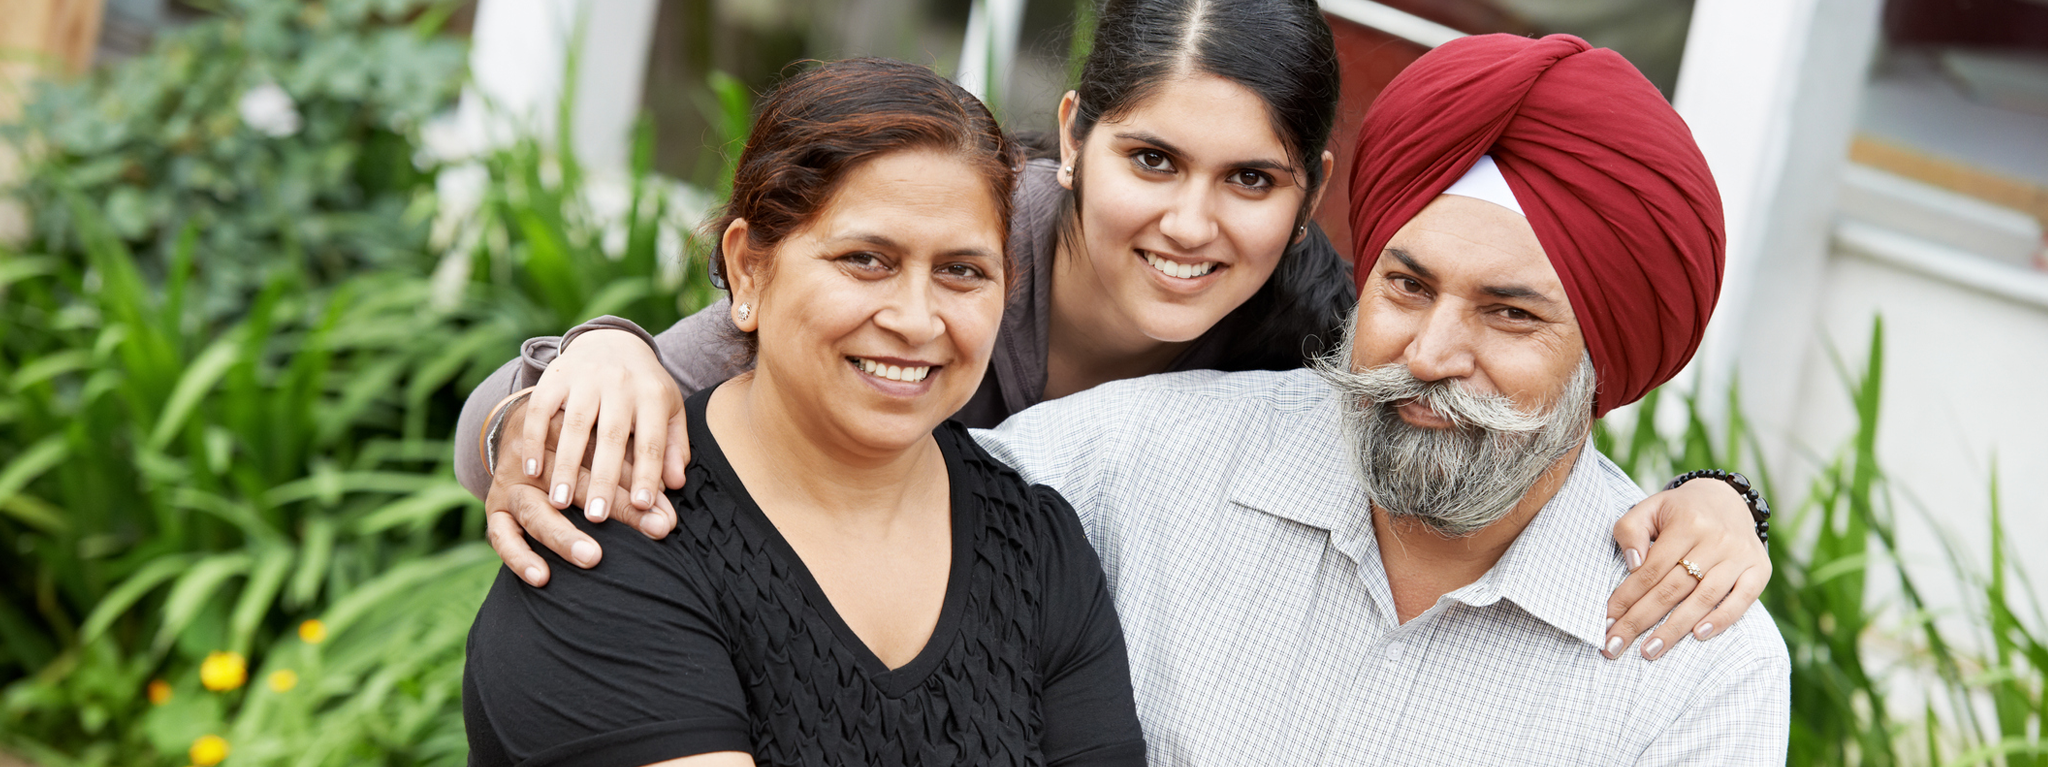 Smiling Sikh family